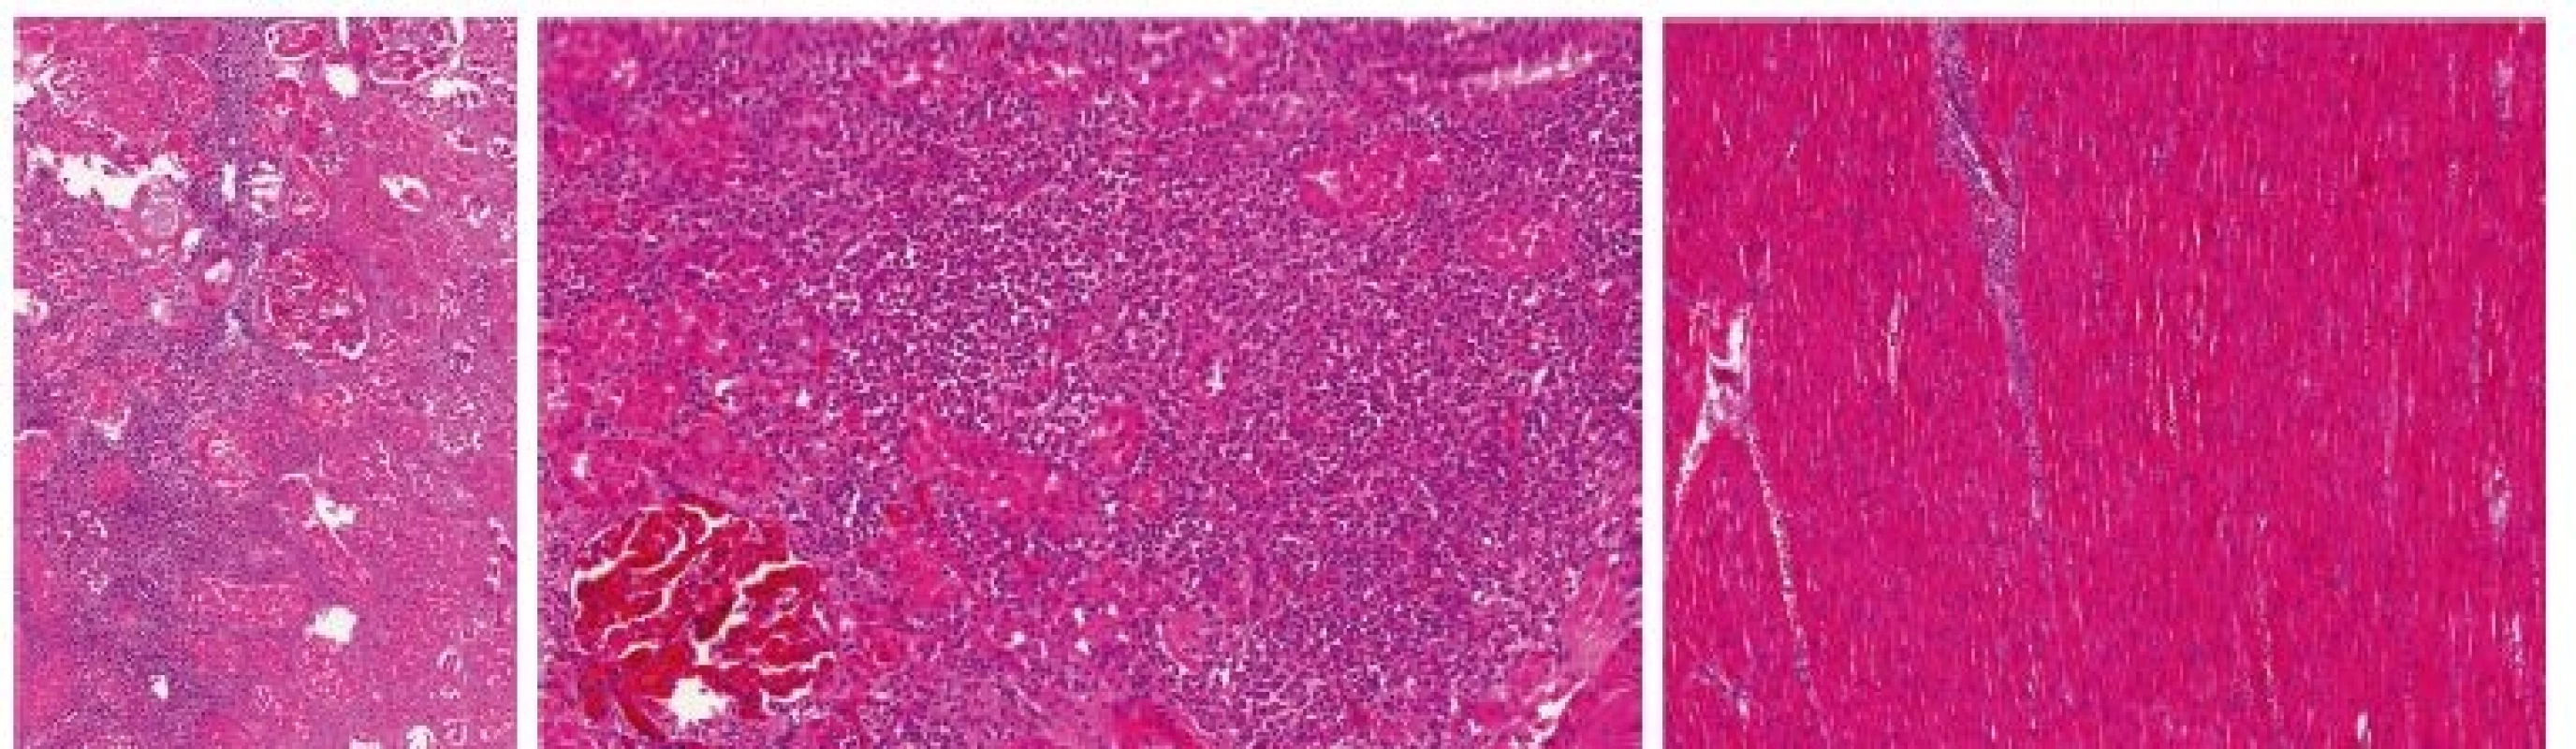 Kazuistika 1– histologický obraz leukemické infiltrace orgánů